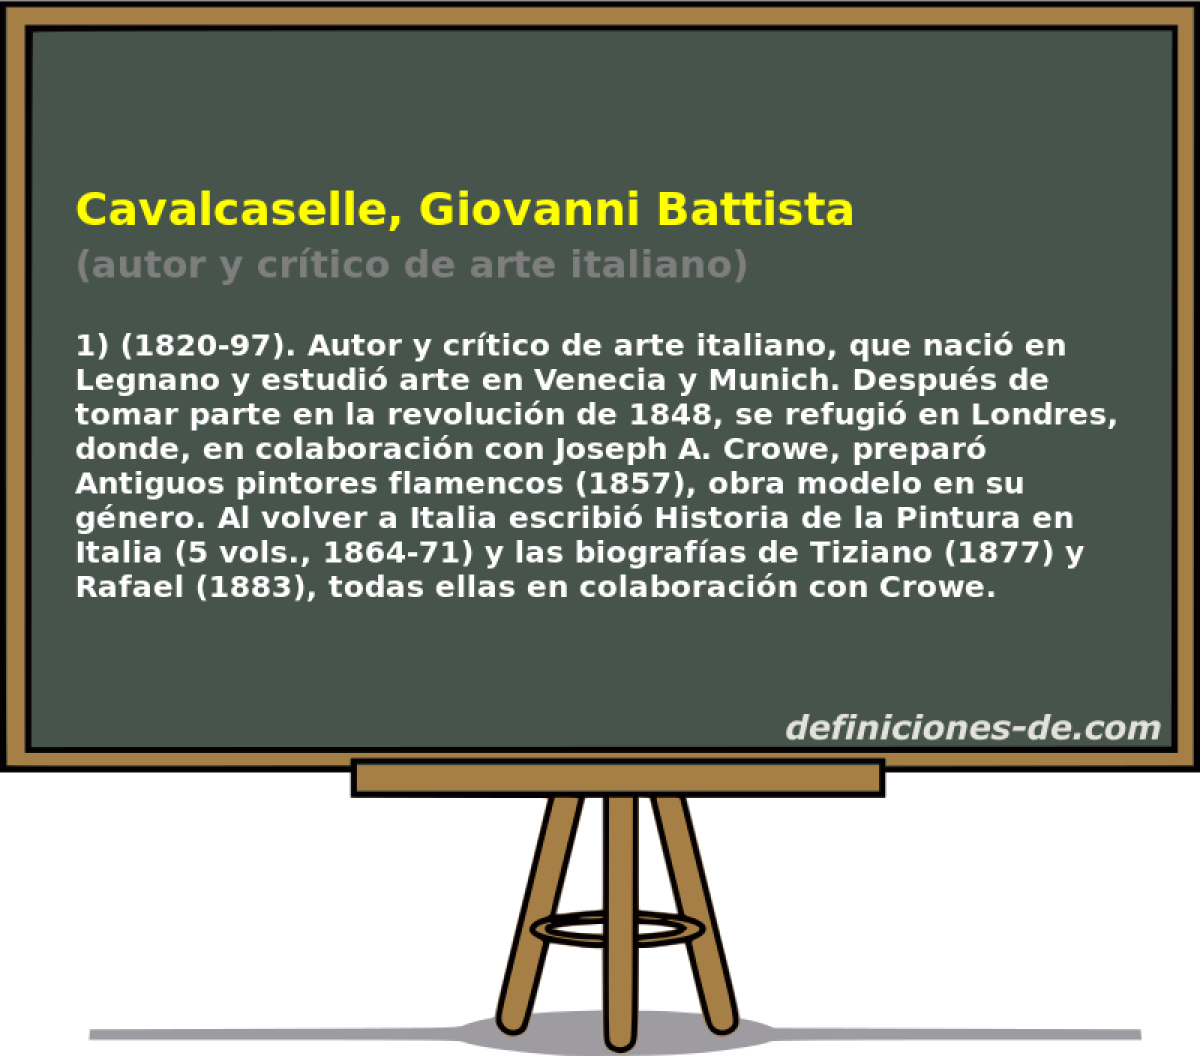 Cavalcaselle, Giovanni Battista (autor y crtico de arte italiano)